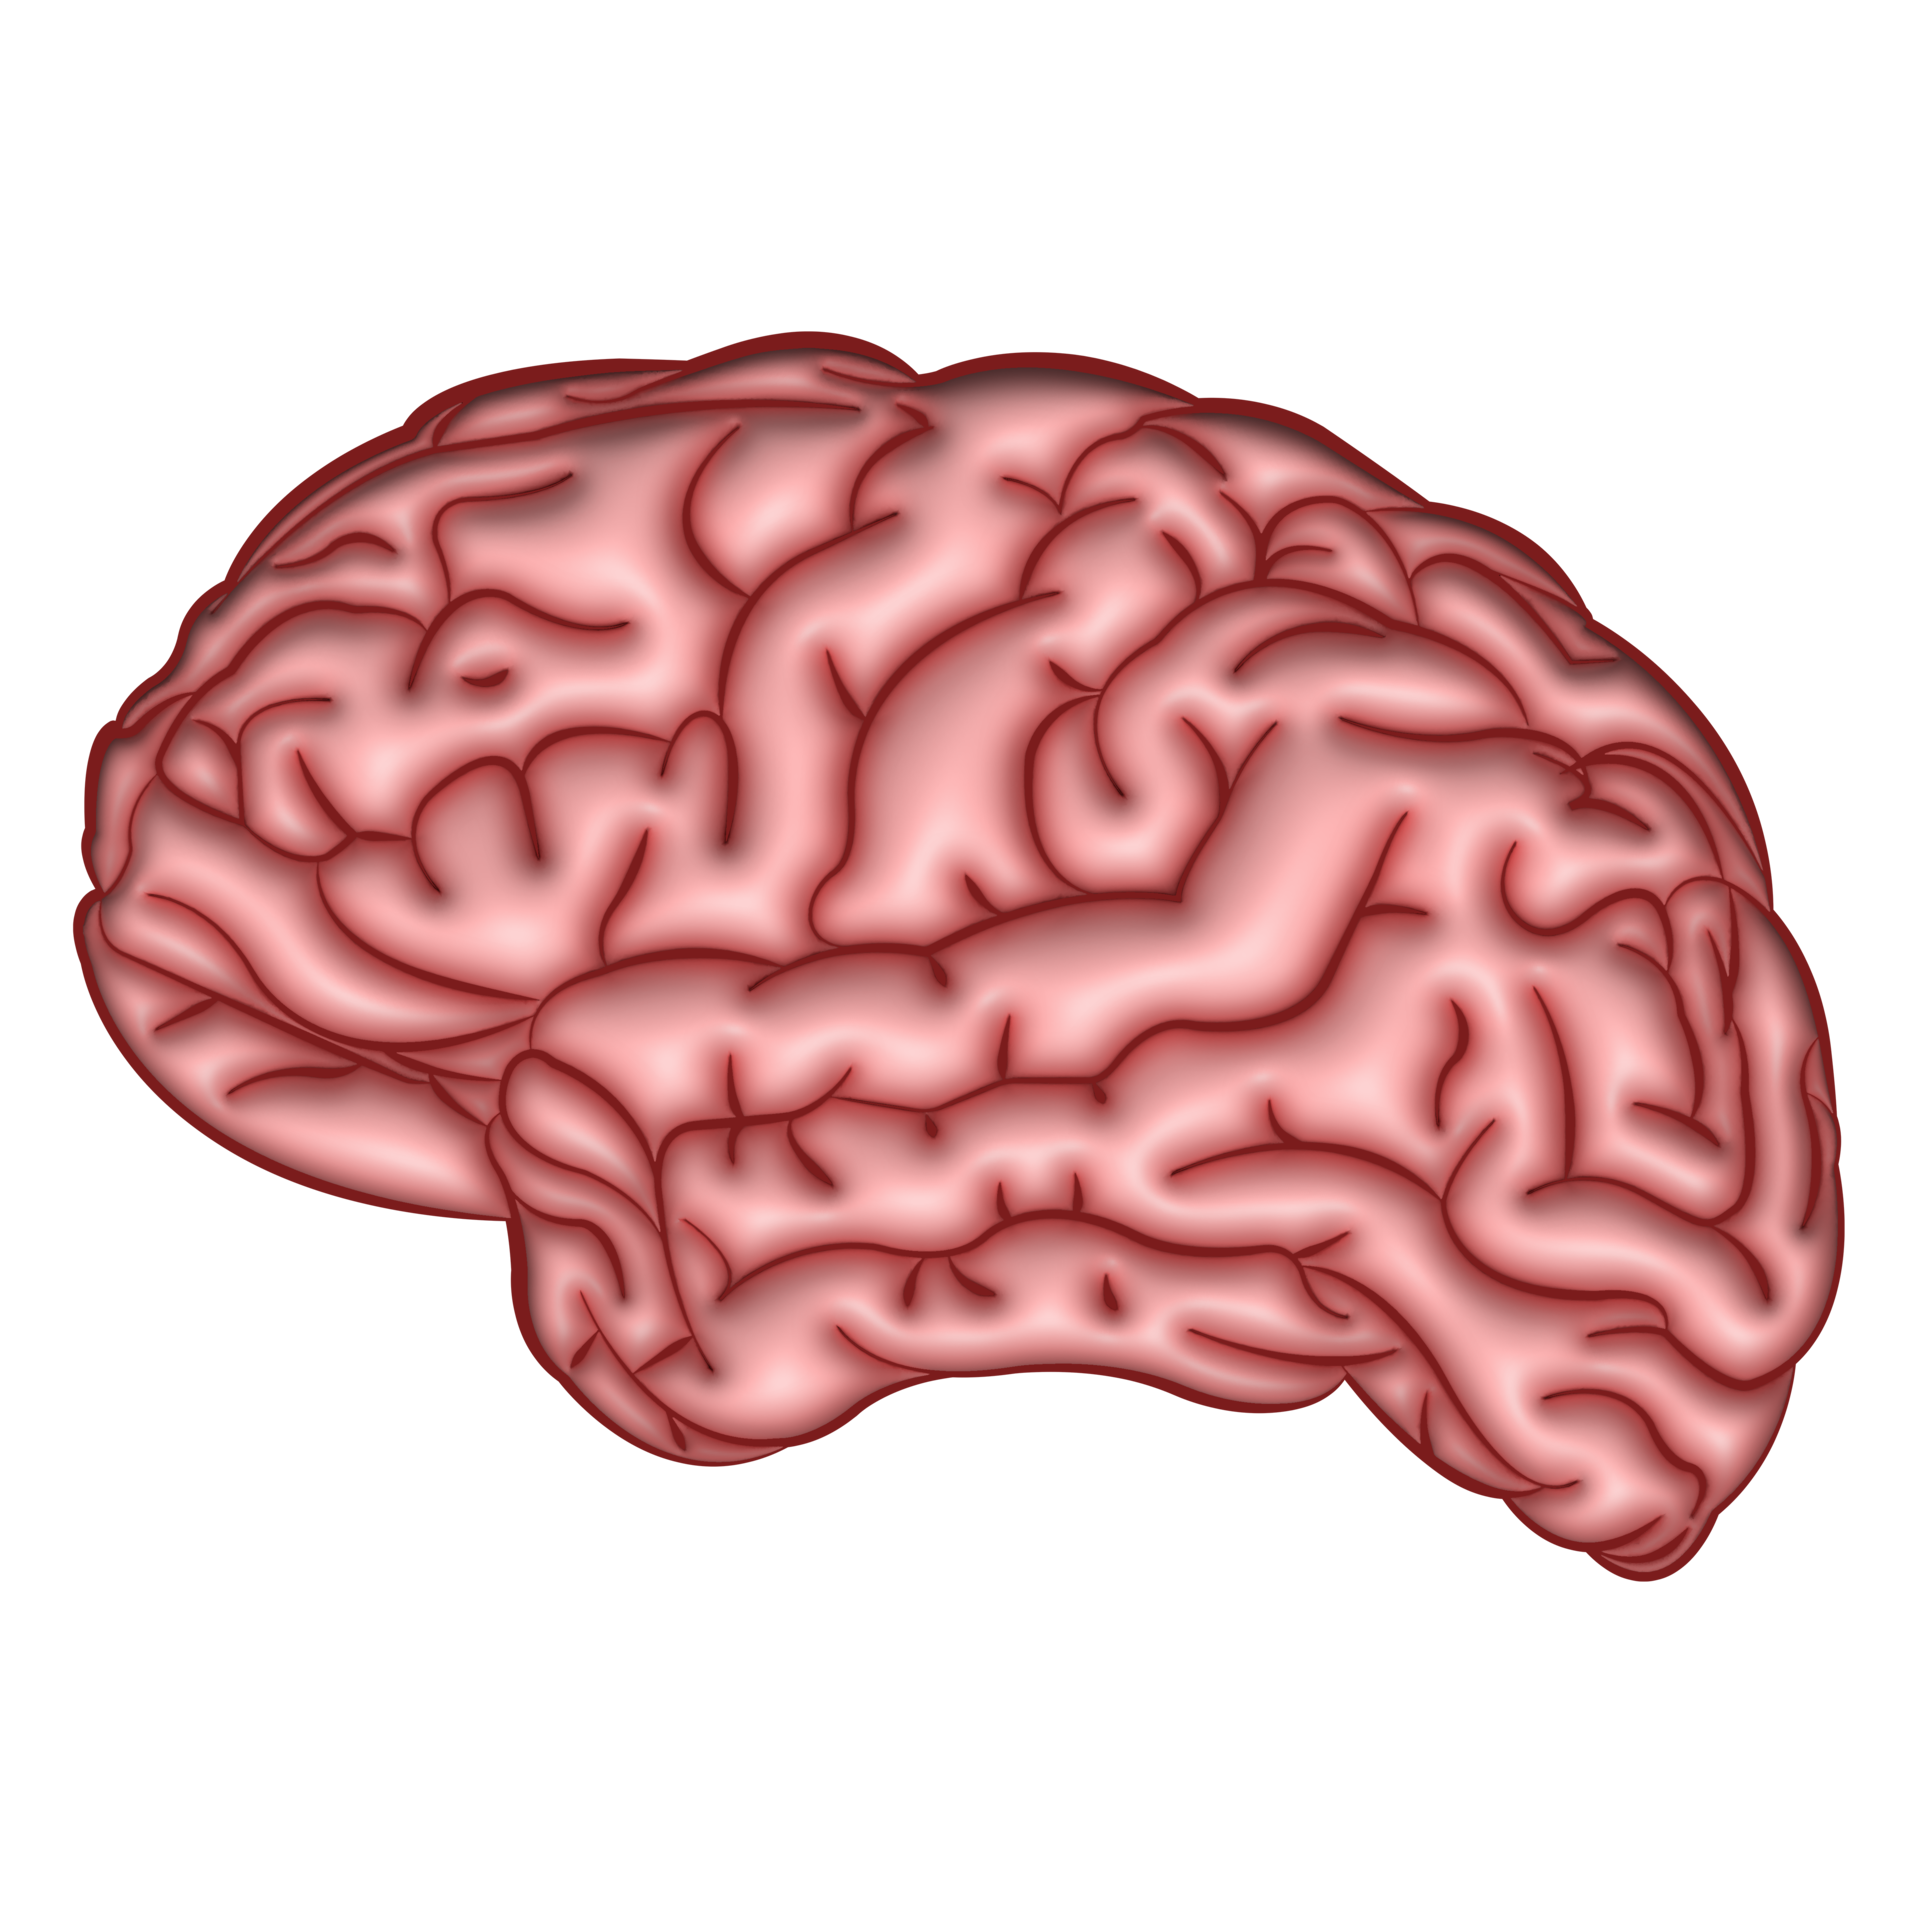 Bộ não người illustration 3D trong suốt miễn phí 13114272: Bộ não người 3D trong suốt là một tác phẩm nghệ thuật độc đáo. Với chi tiết tuyệt vời, bạn sẽ được trải nghiệm những gì diễn ra bên trong trí não độc đáo. Với miễn phí 13114272, bạn có thể tải về và sở hữu bộ não người 3D trong suốt này ngay lập tức. Khám phá ngay!